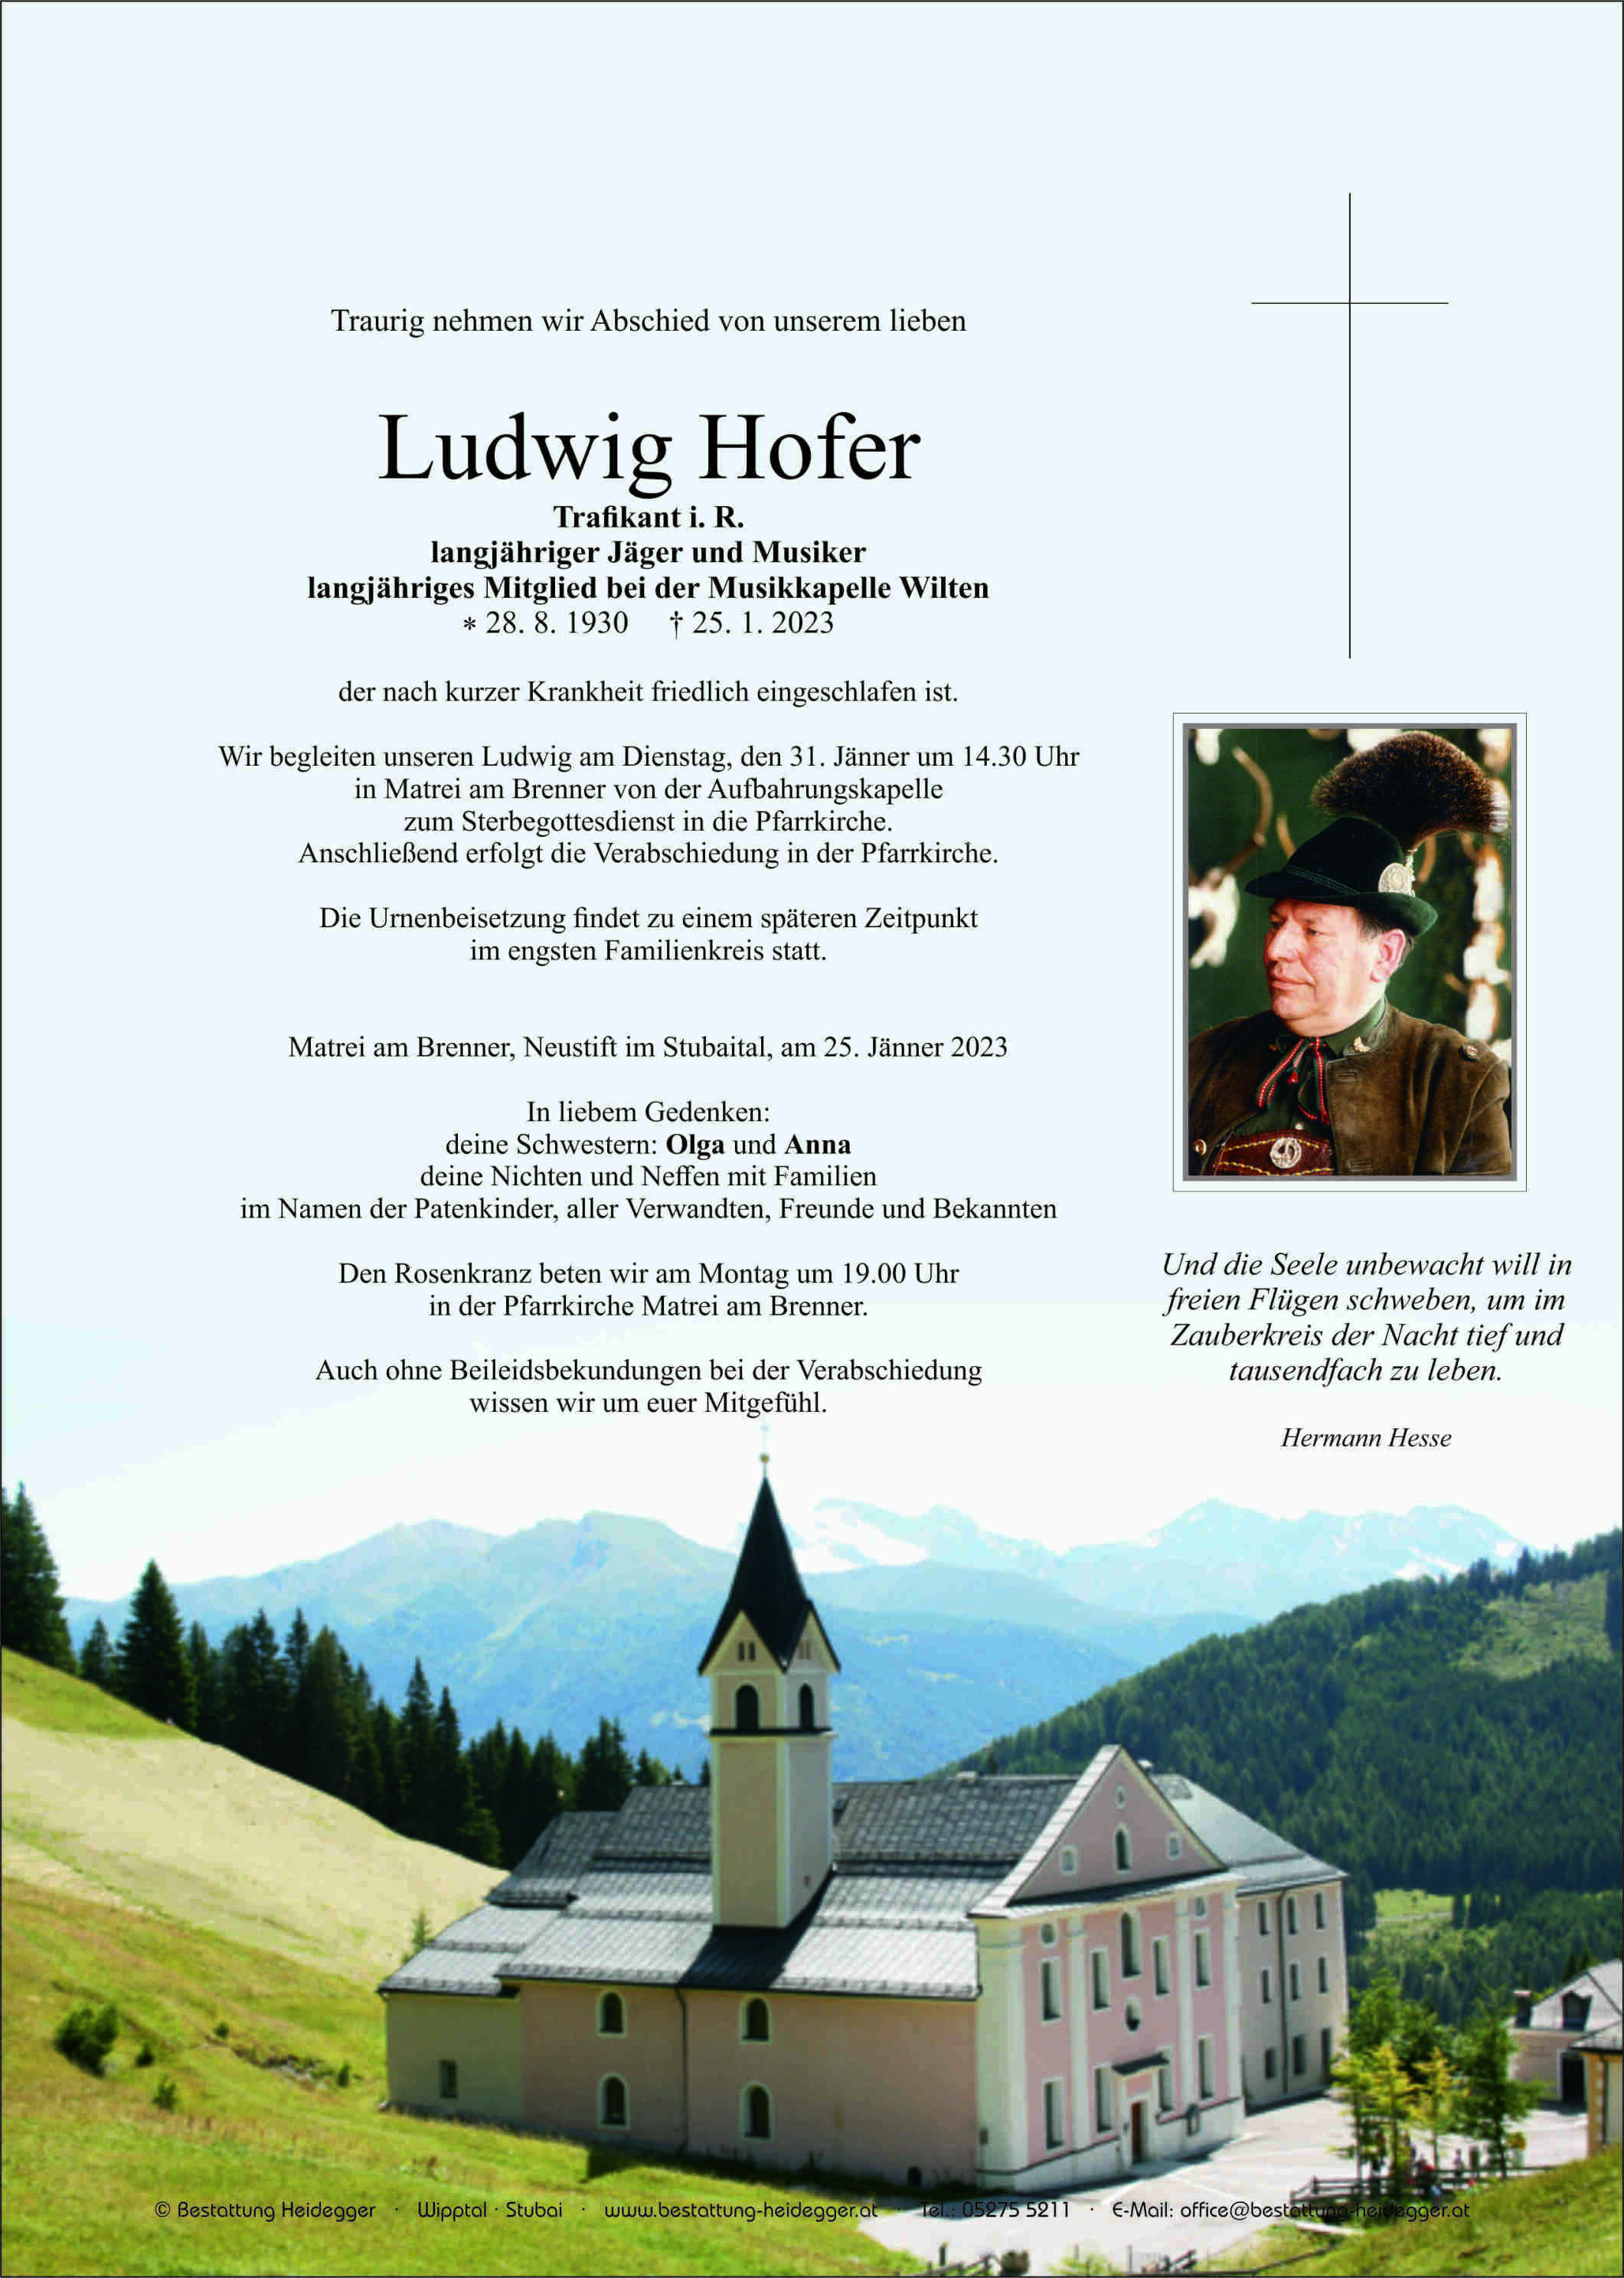 Ludwig Hofer